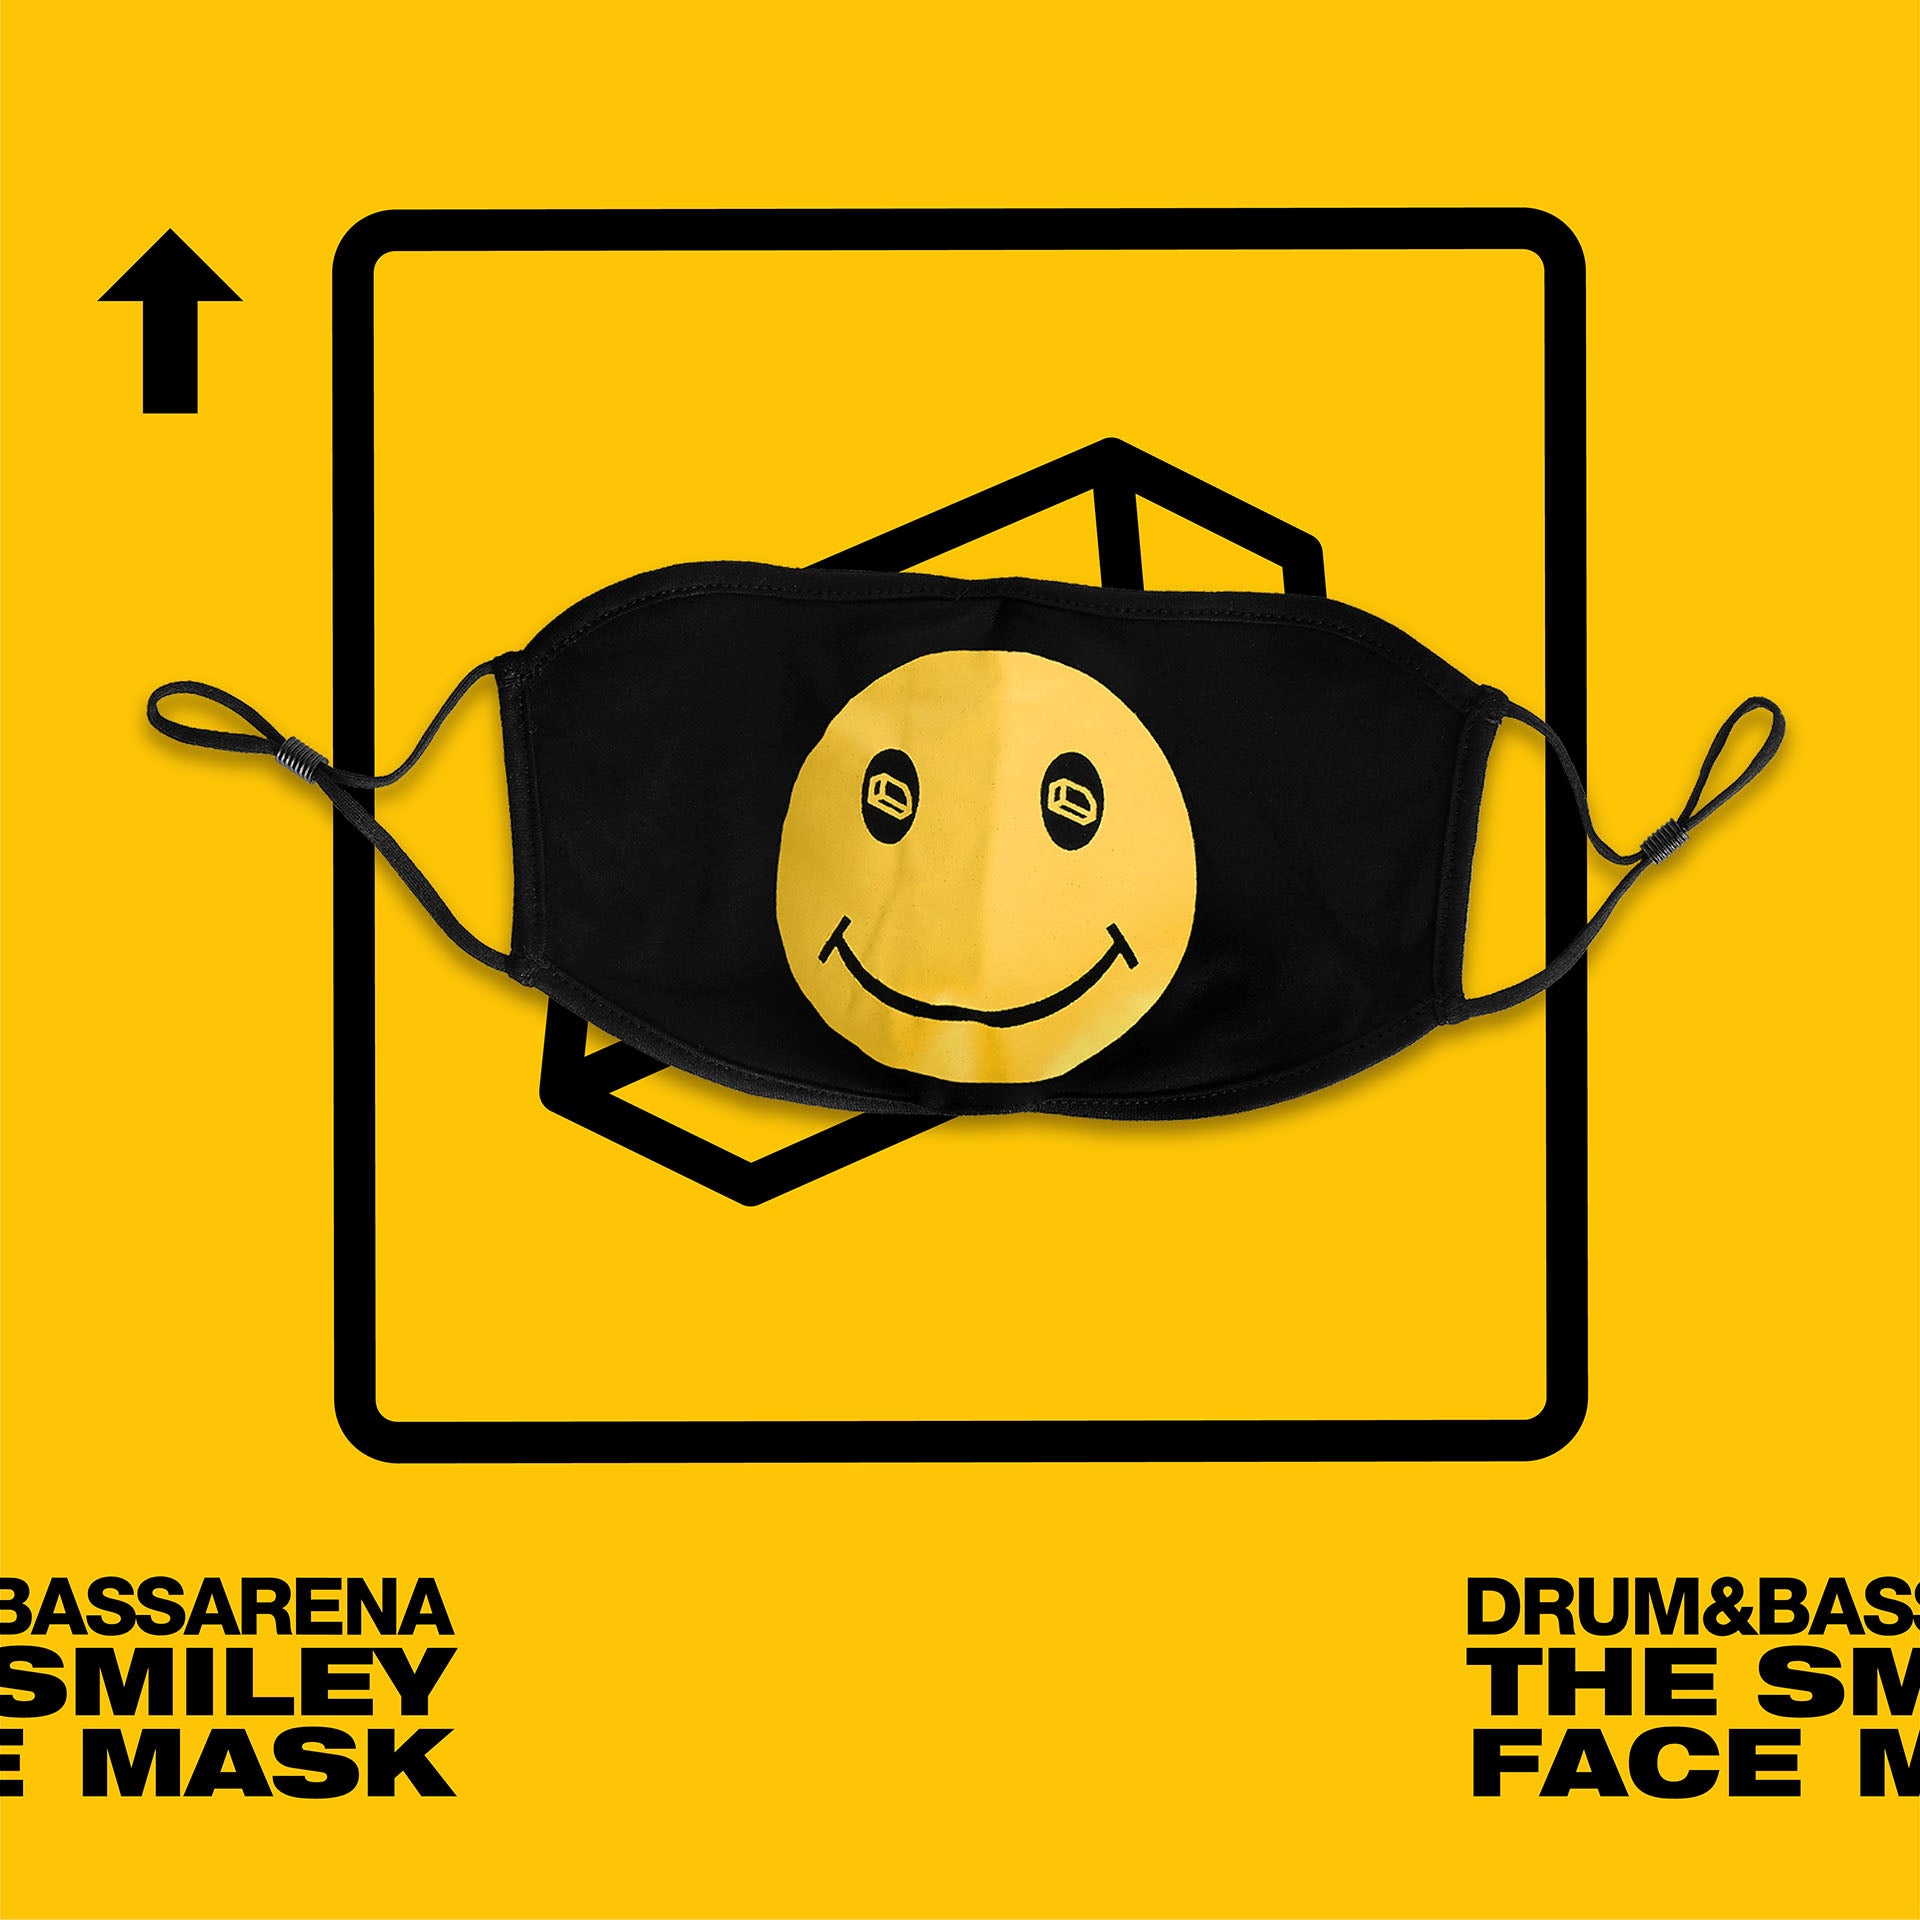 La máscara de la cara sonriente